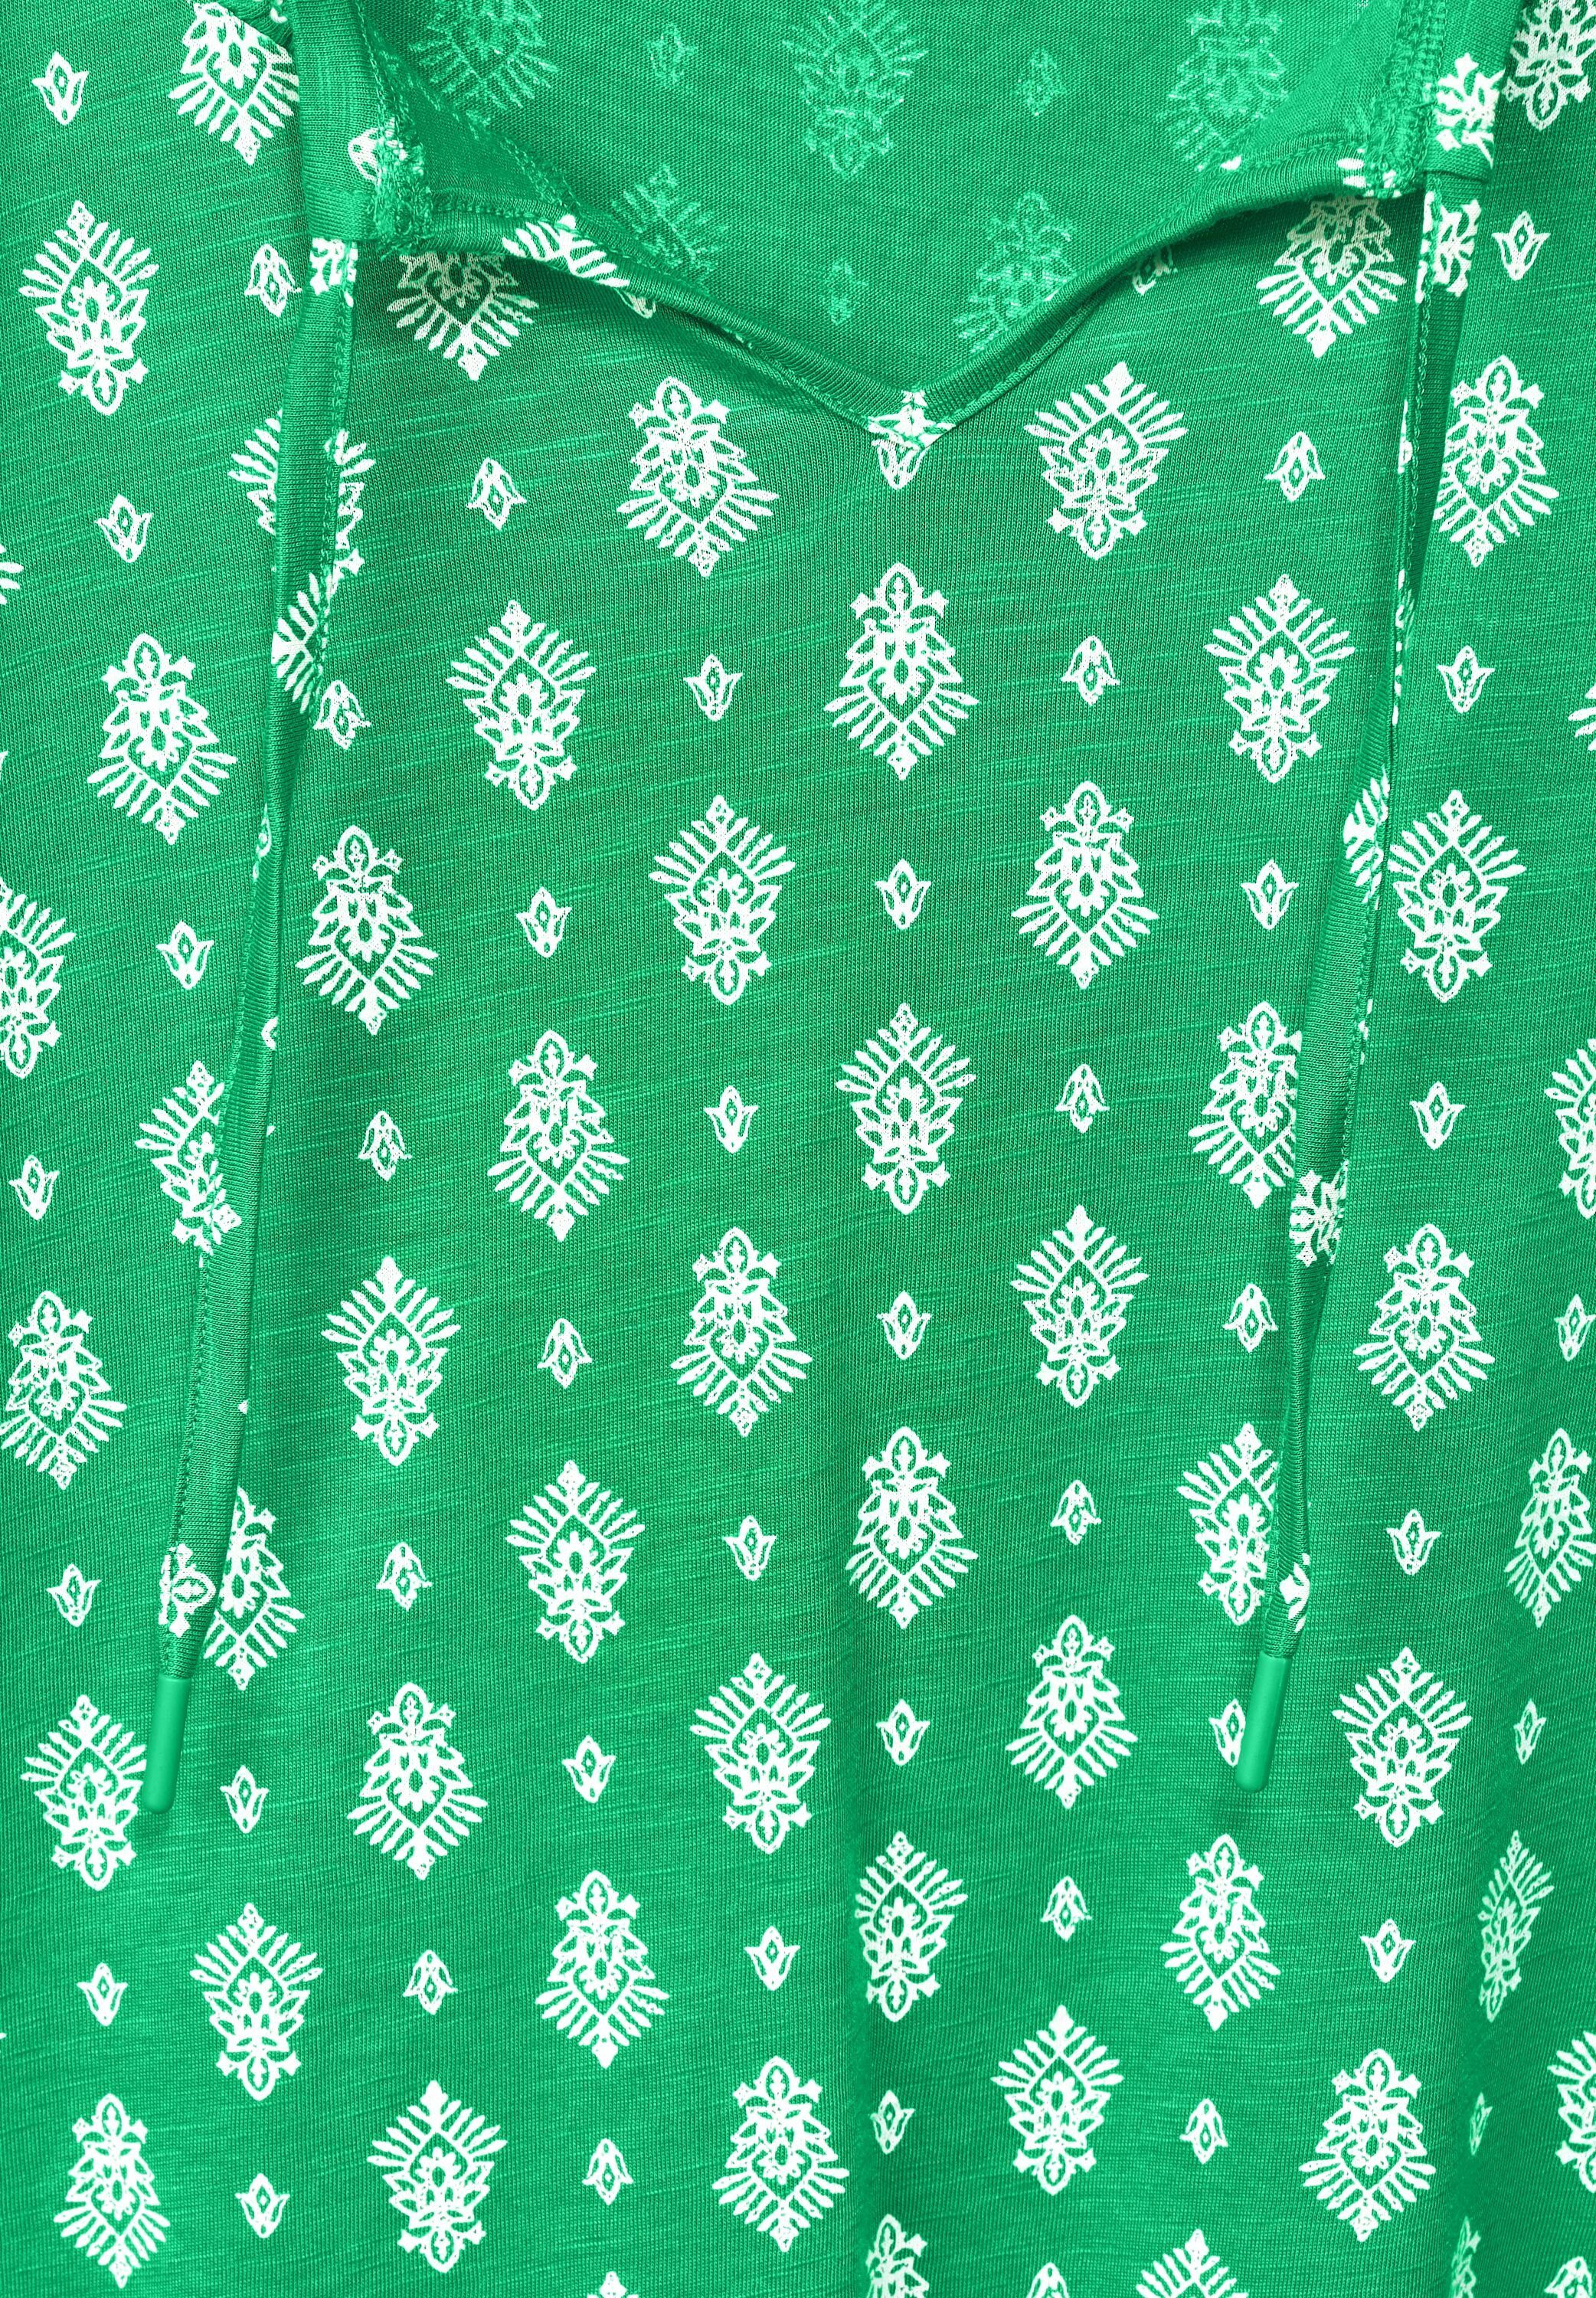 T-Shirt green Materialmix Cecil aus fresh softem